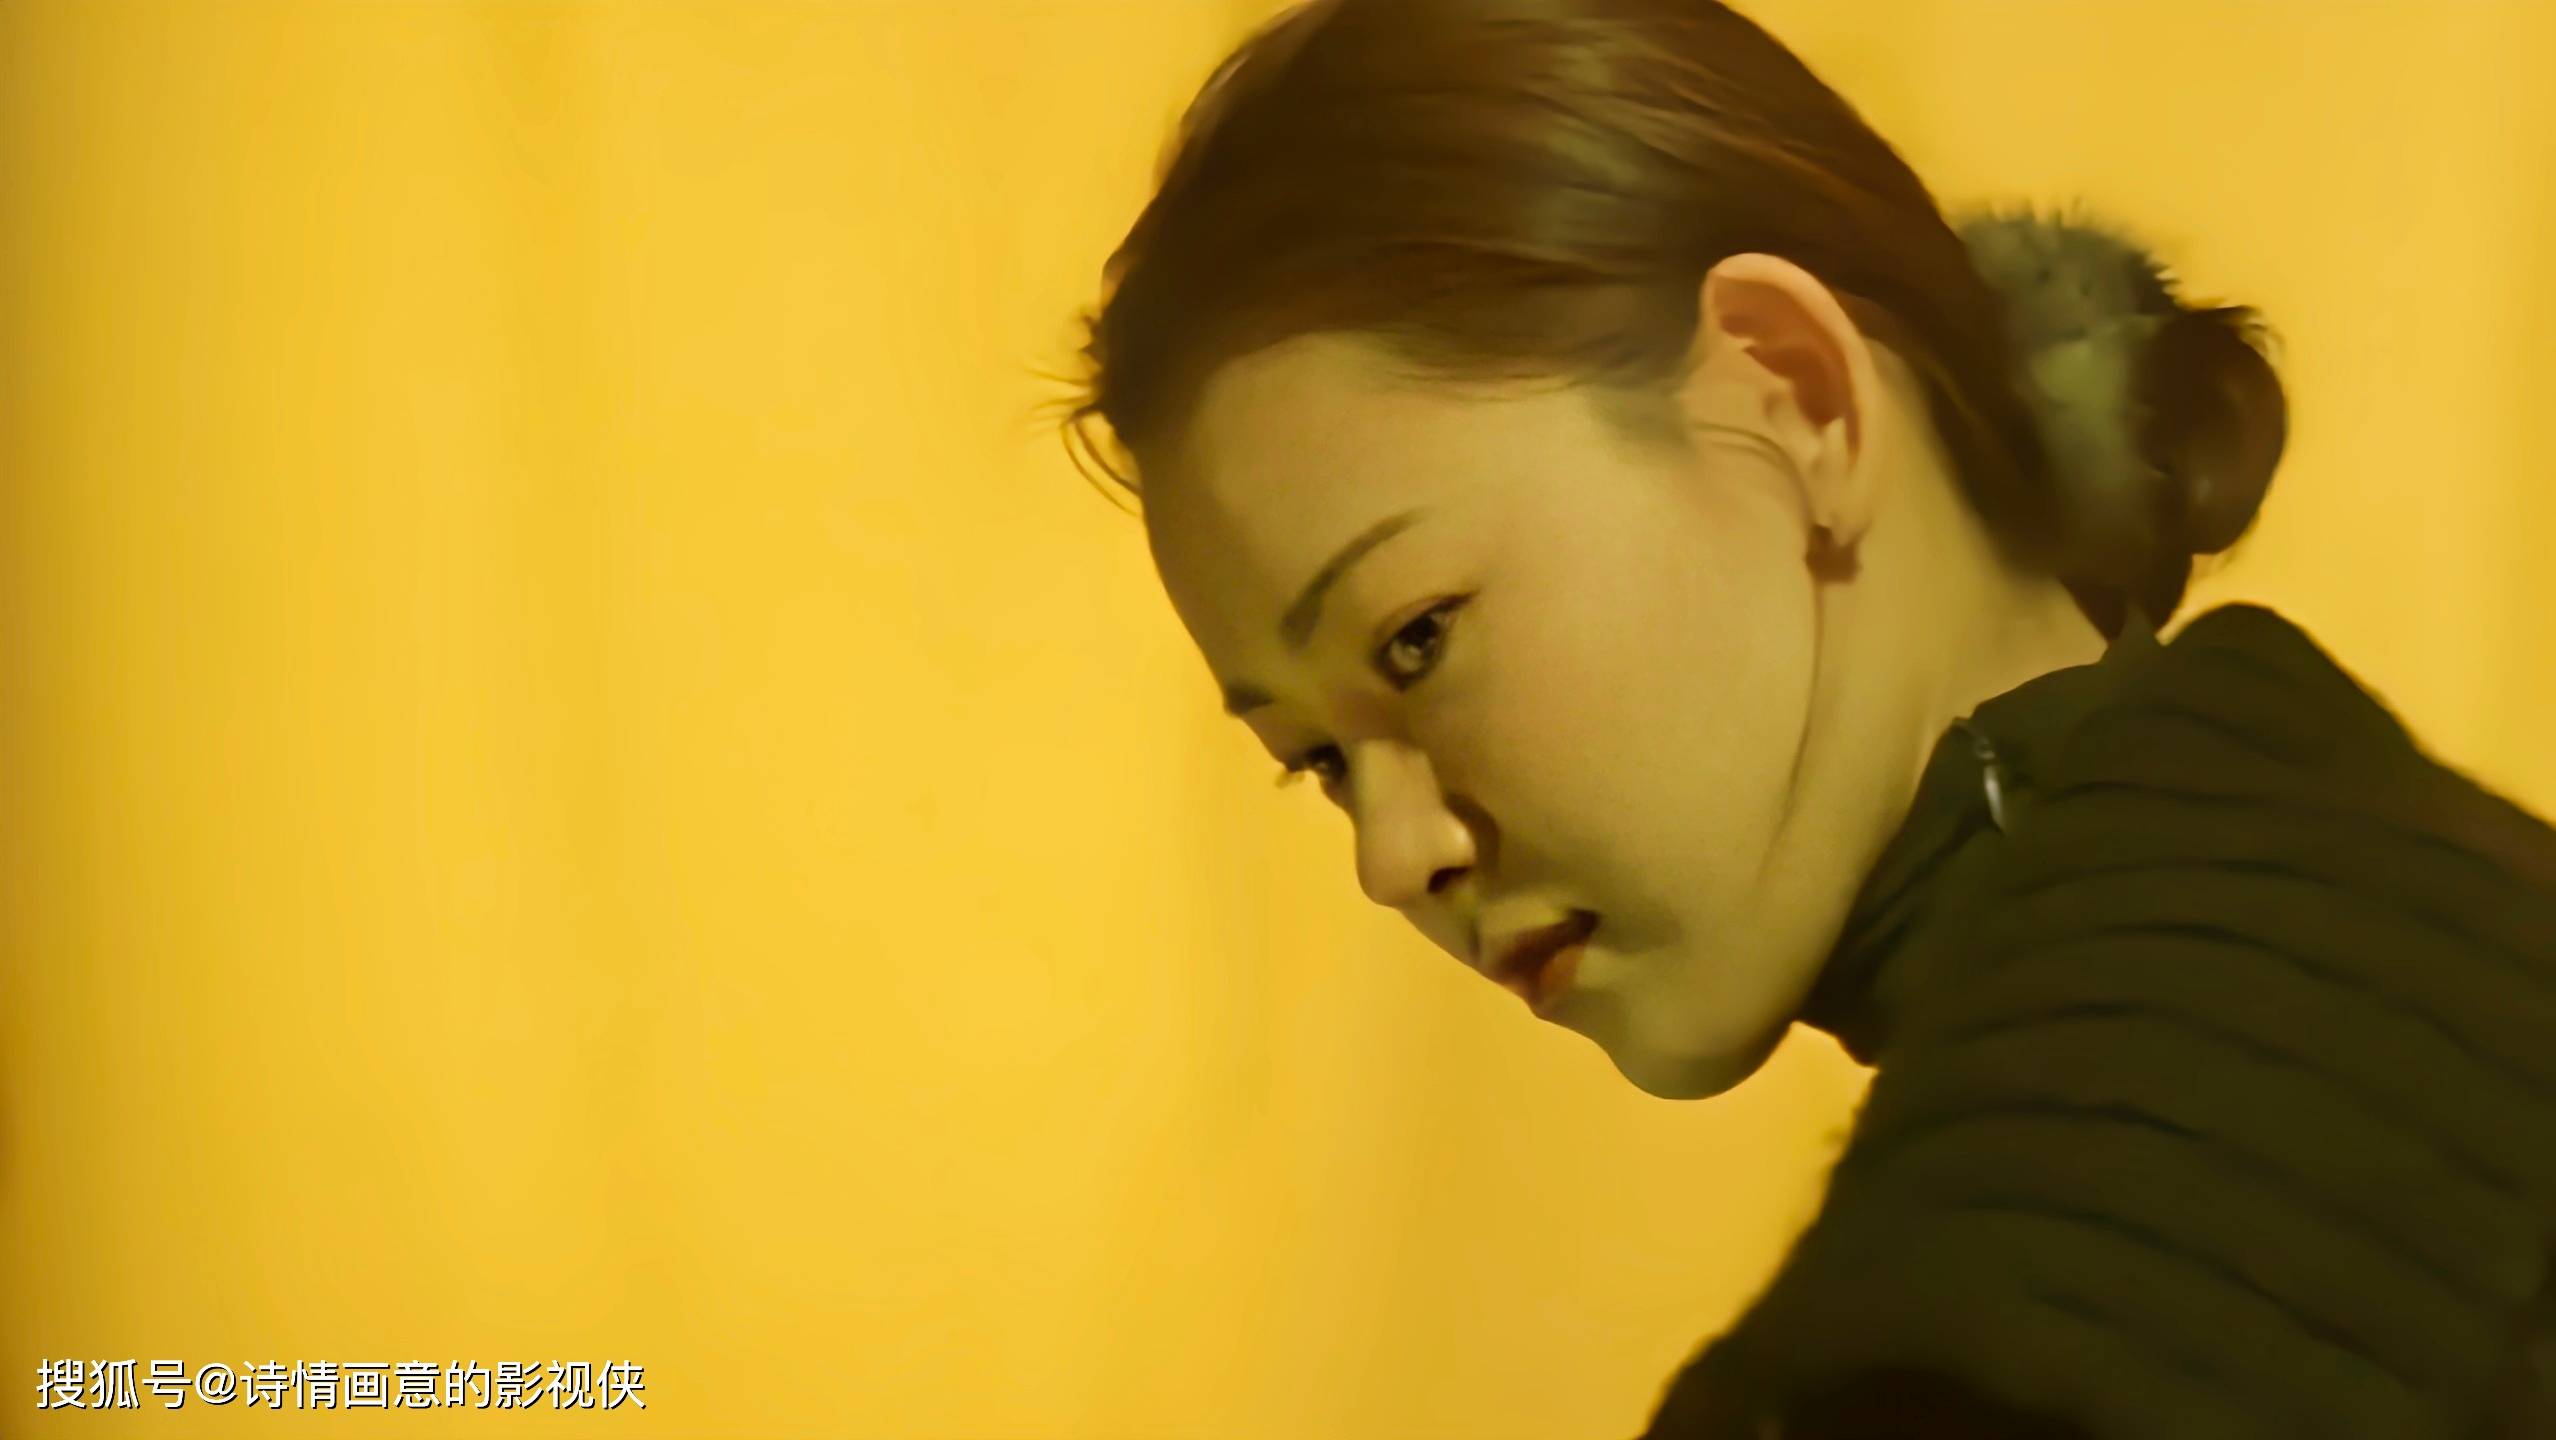 韩国伦理电影《绿色椅子》解读:禁忌之恋下的道德与情感挣扎